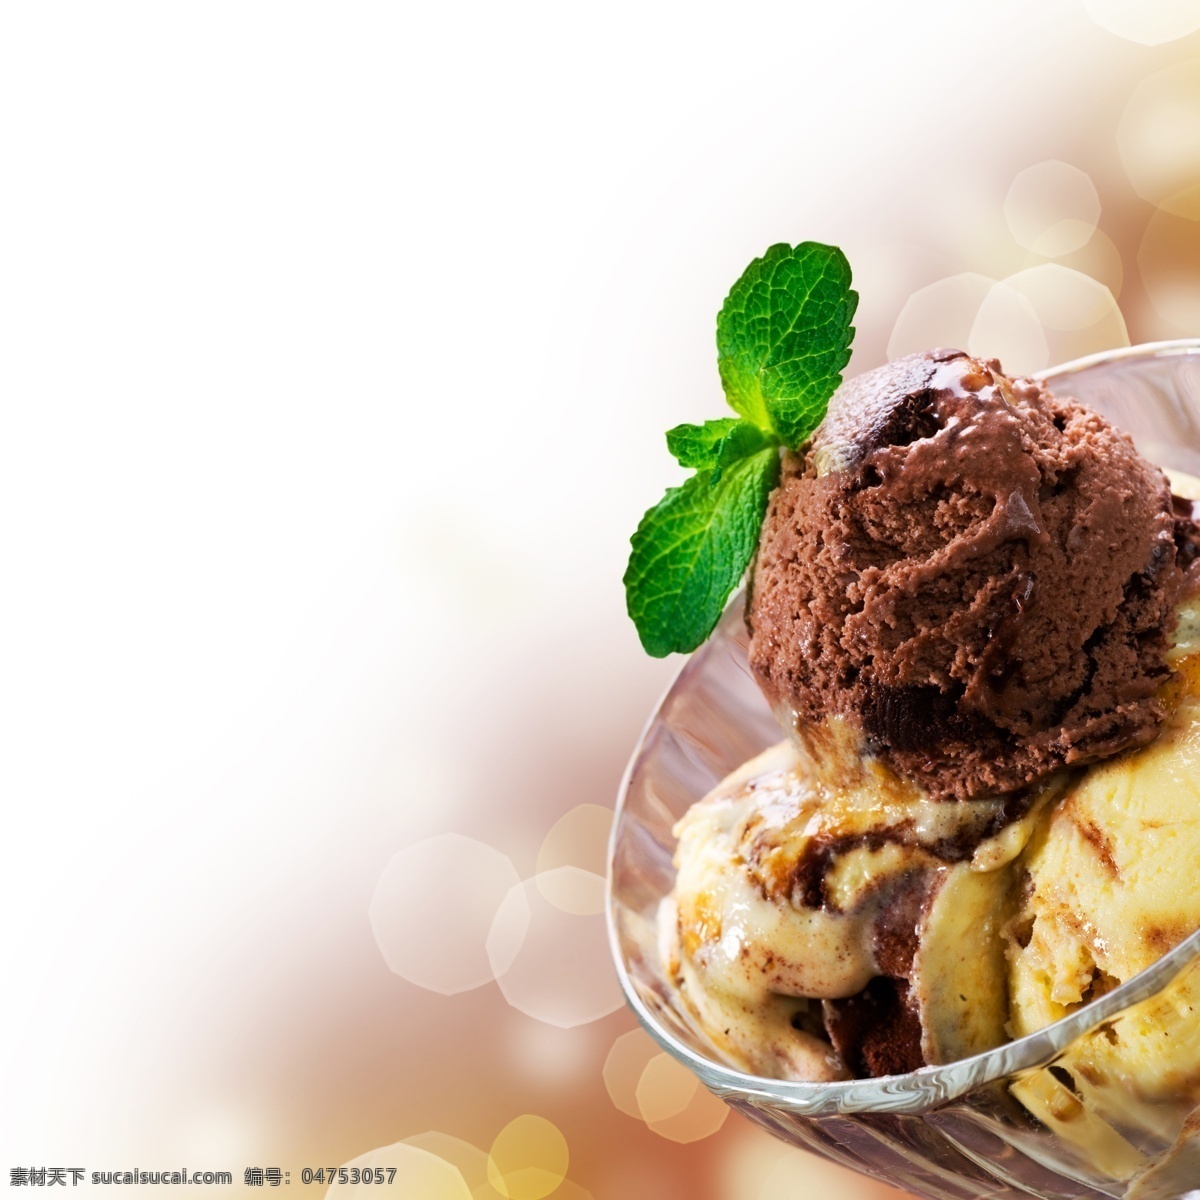 薄荷 冰 激 淋 薄荷冰激淋 冰淇淋 冰激淋 甜品美食 美味 美食图片 餐饮美食